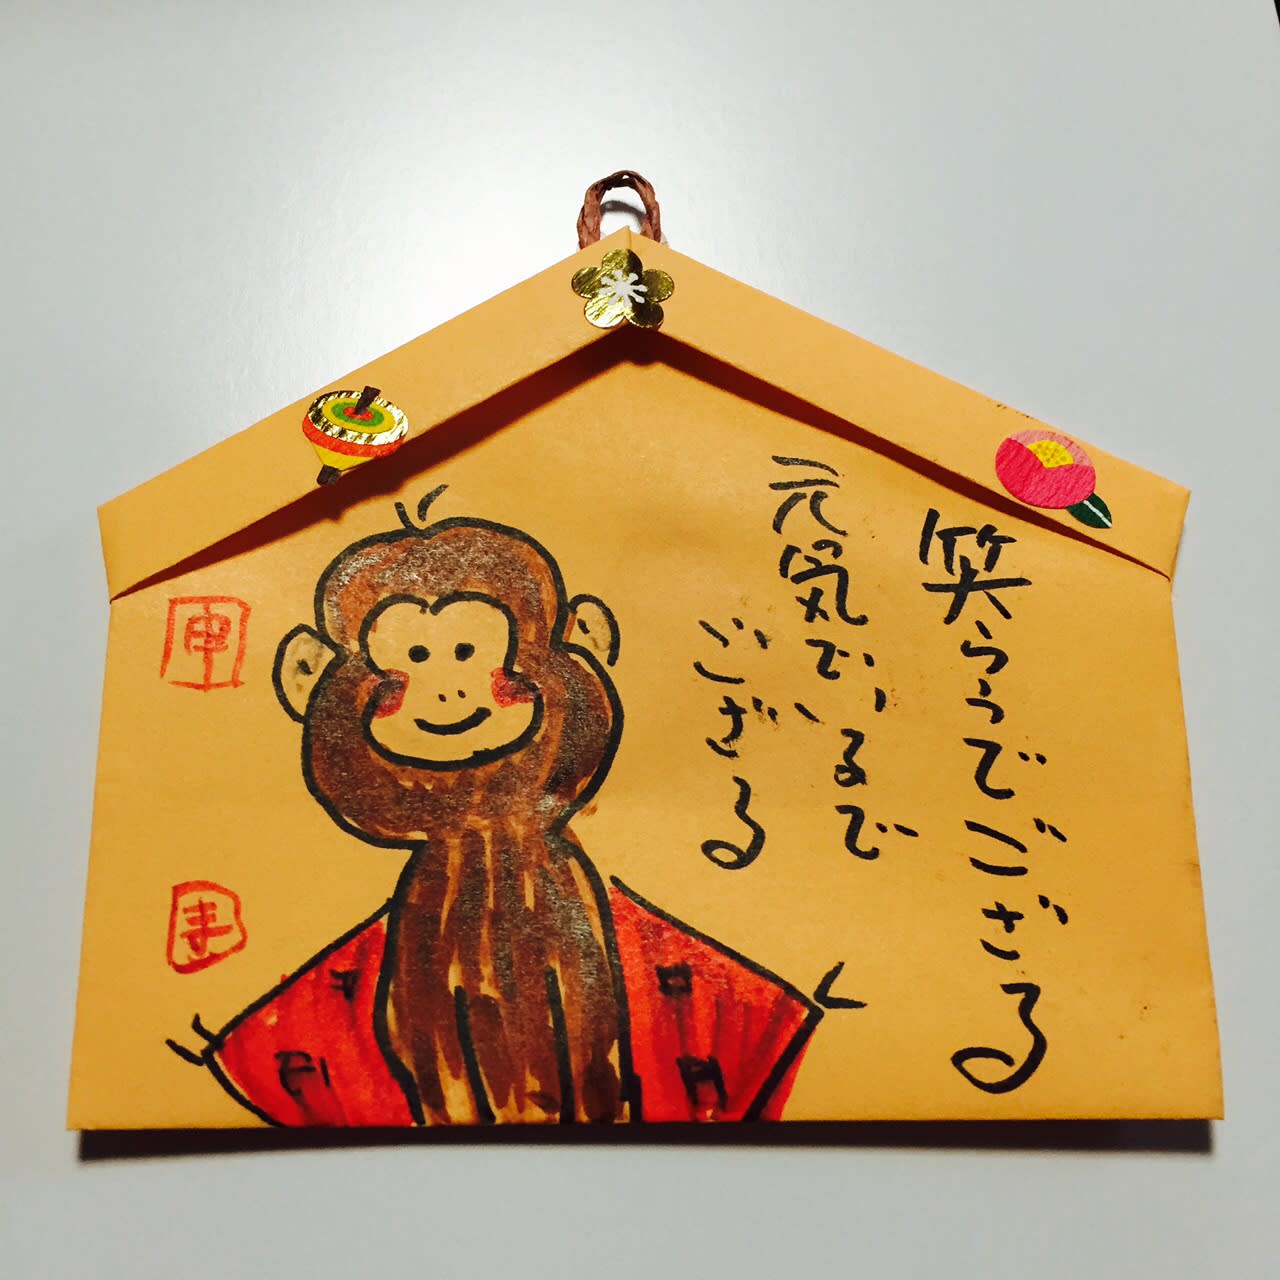 折り紙で絵馬つくりました 絵手紙でお猿さん描きました ７秒間のｷﾞｭﾂ